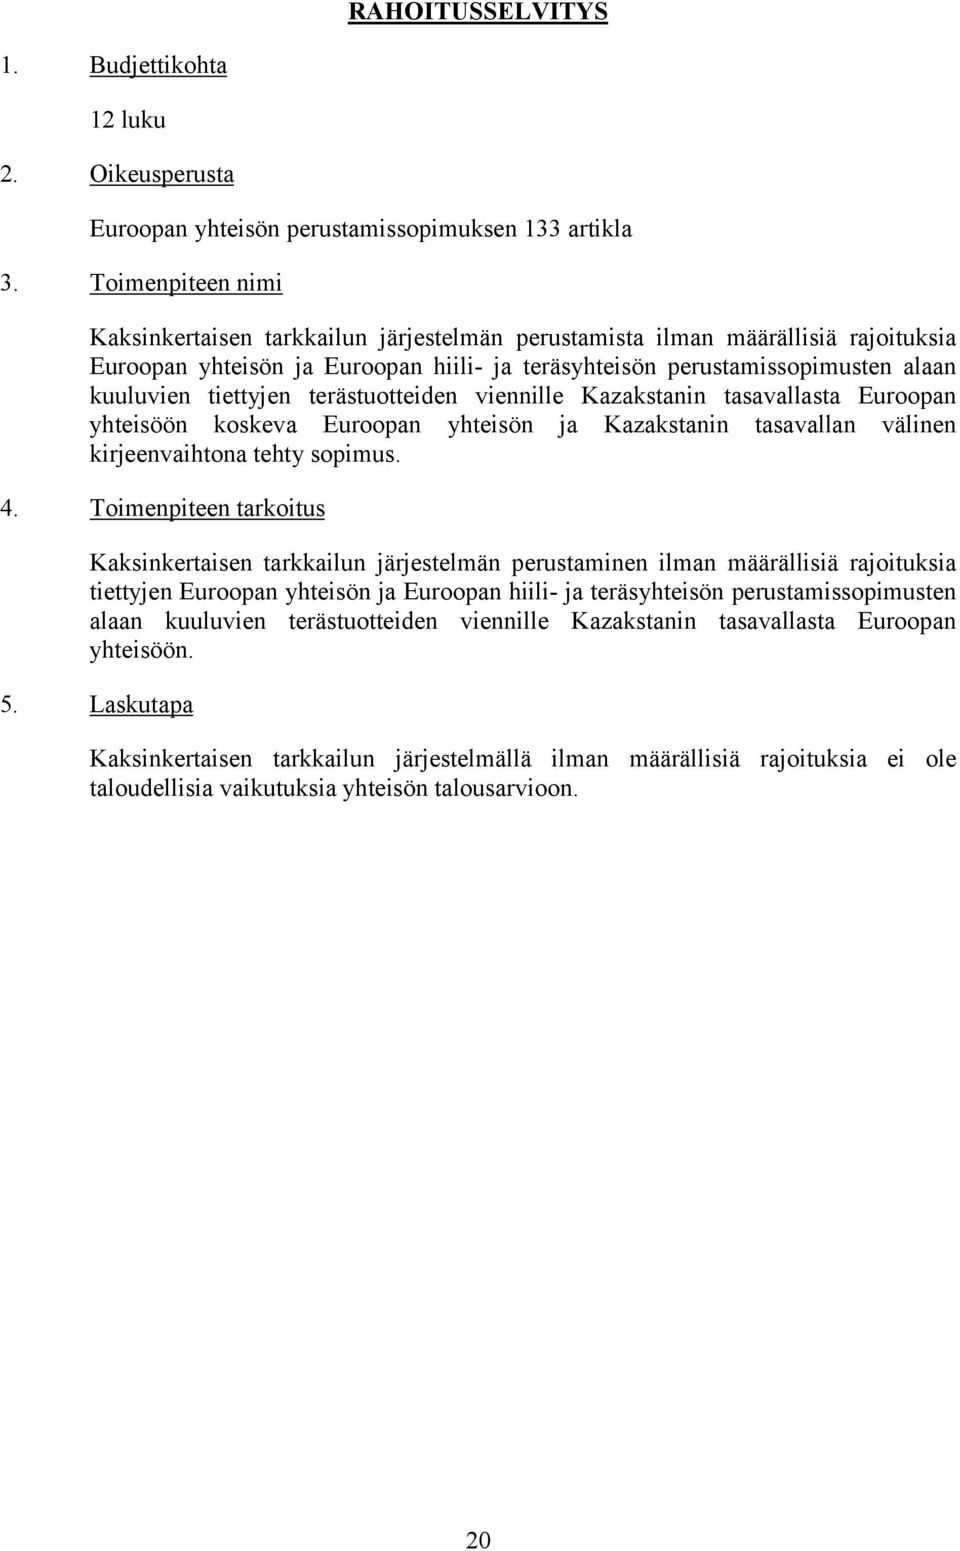 tiettyjen terästuotteiden viennille Kazakstanin tasavallasta Euroopan yhteisöön koskeva Euroopan yhteisön ja Kazakstanin tasavallan välinen kirjeenvaihtona tehty sopimus. 4.